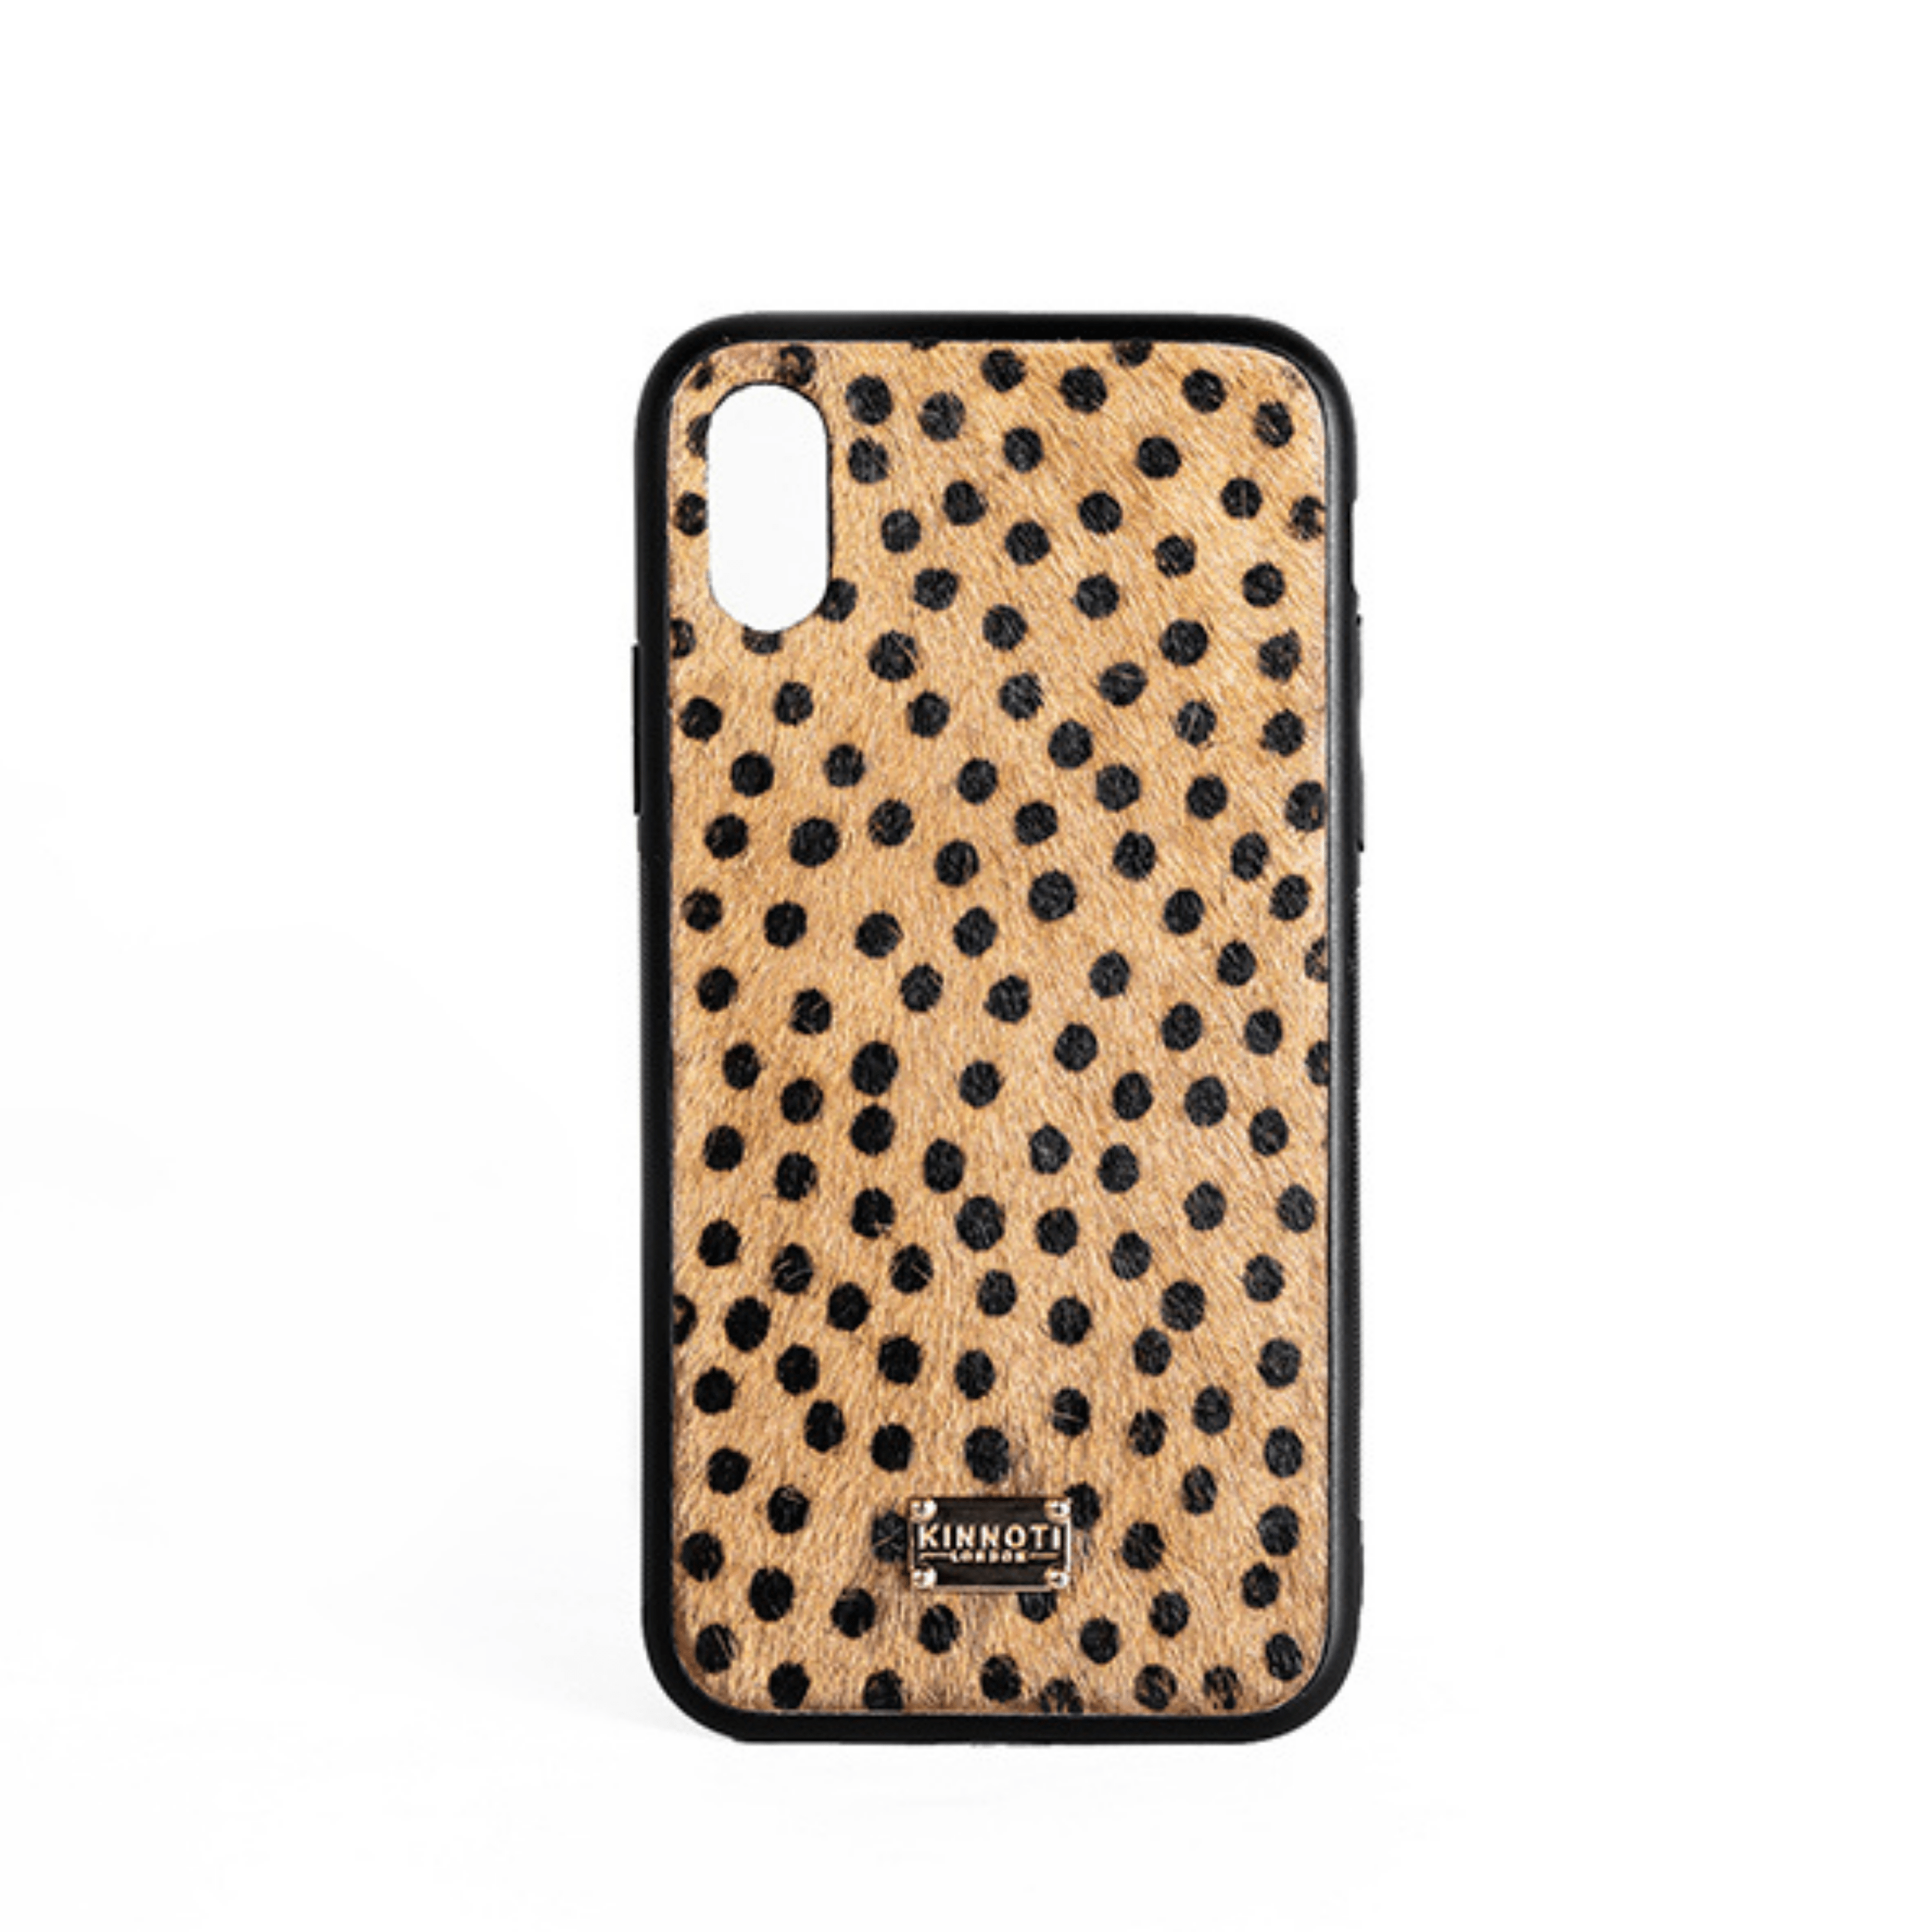 Kinnoti PHONE CASE Leopard Pattern Phone Cover